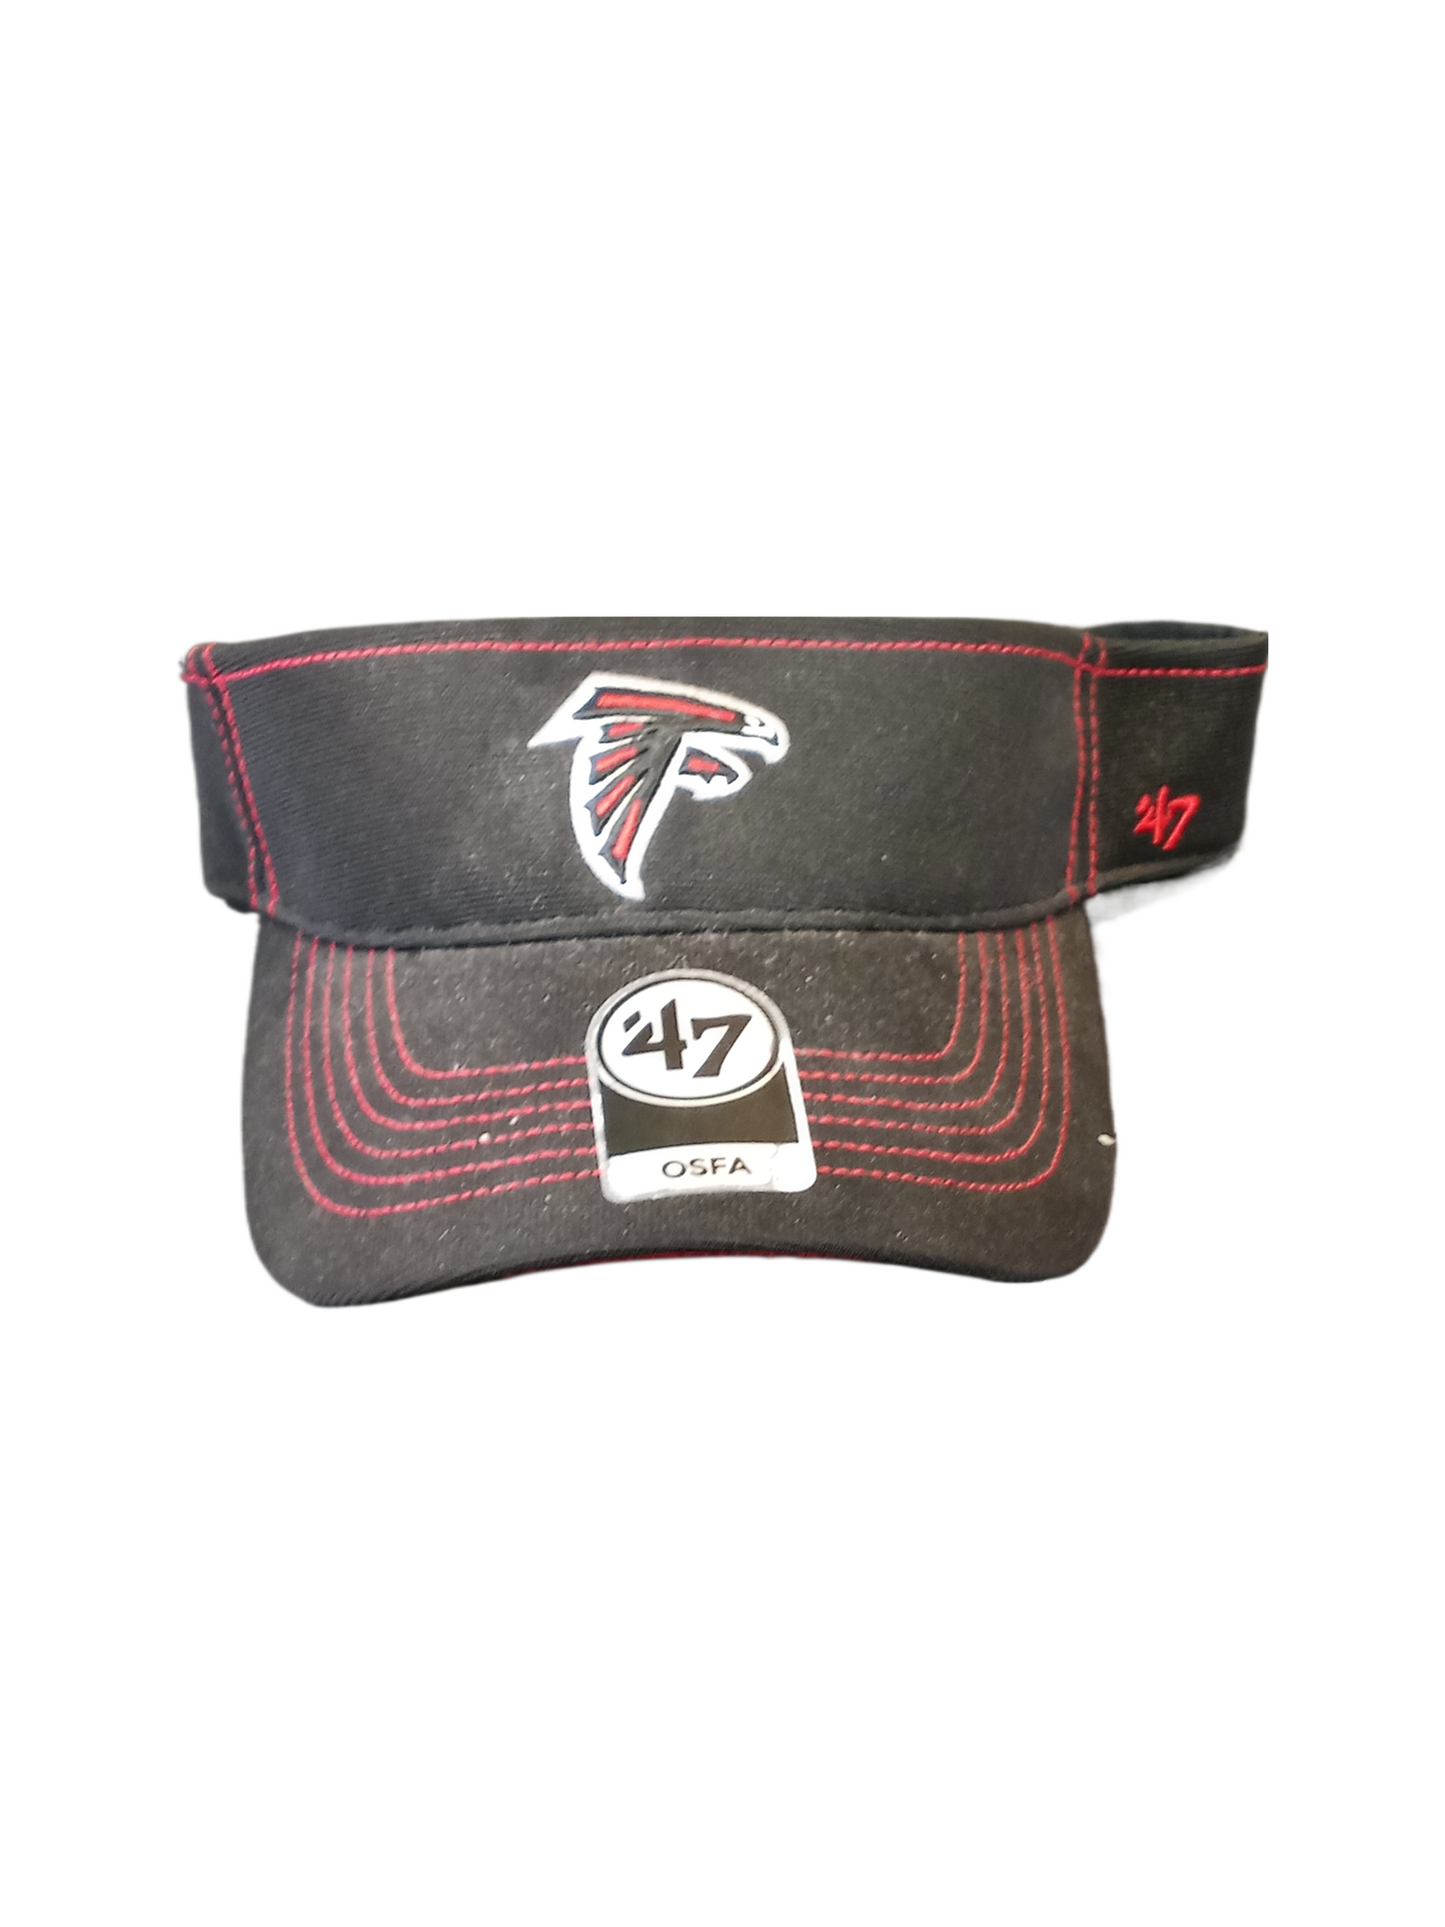 Atlanta Falcons visor black w red stitch